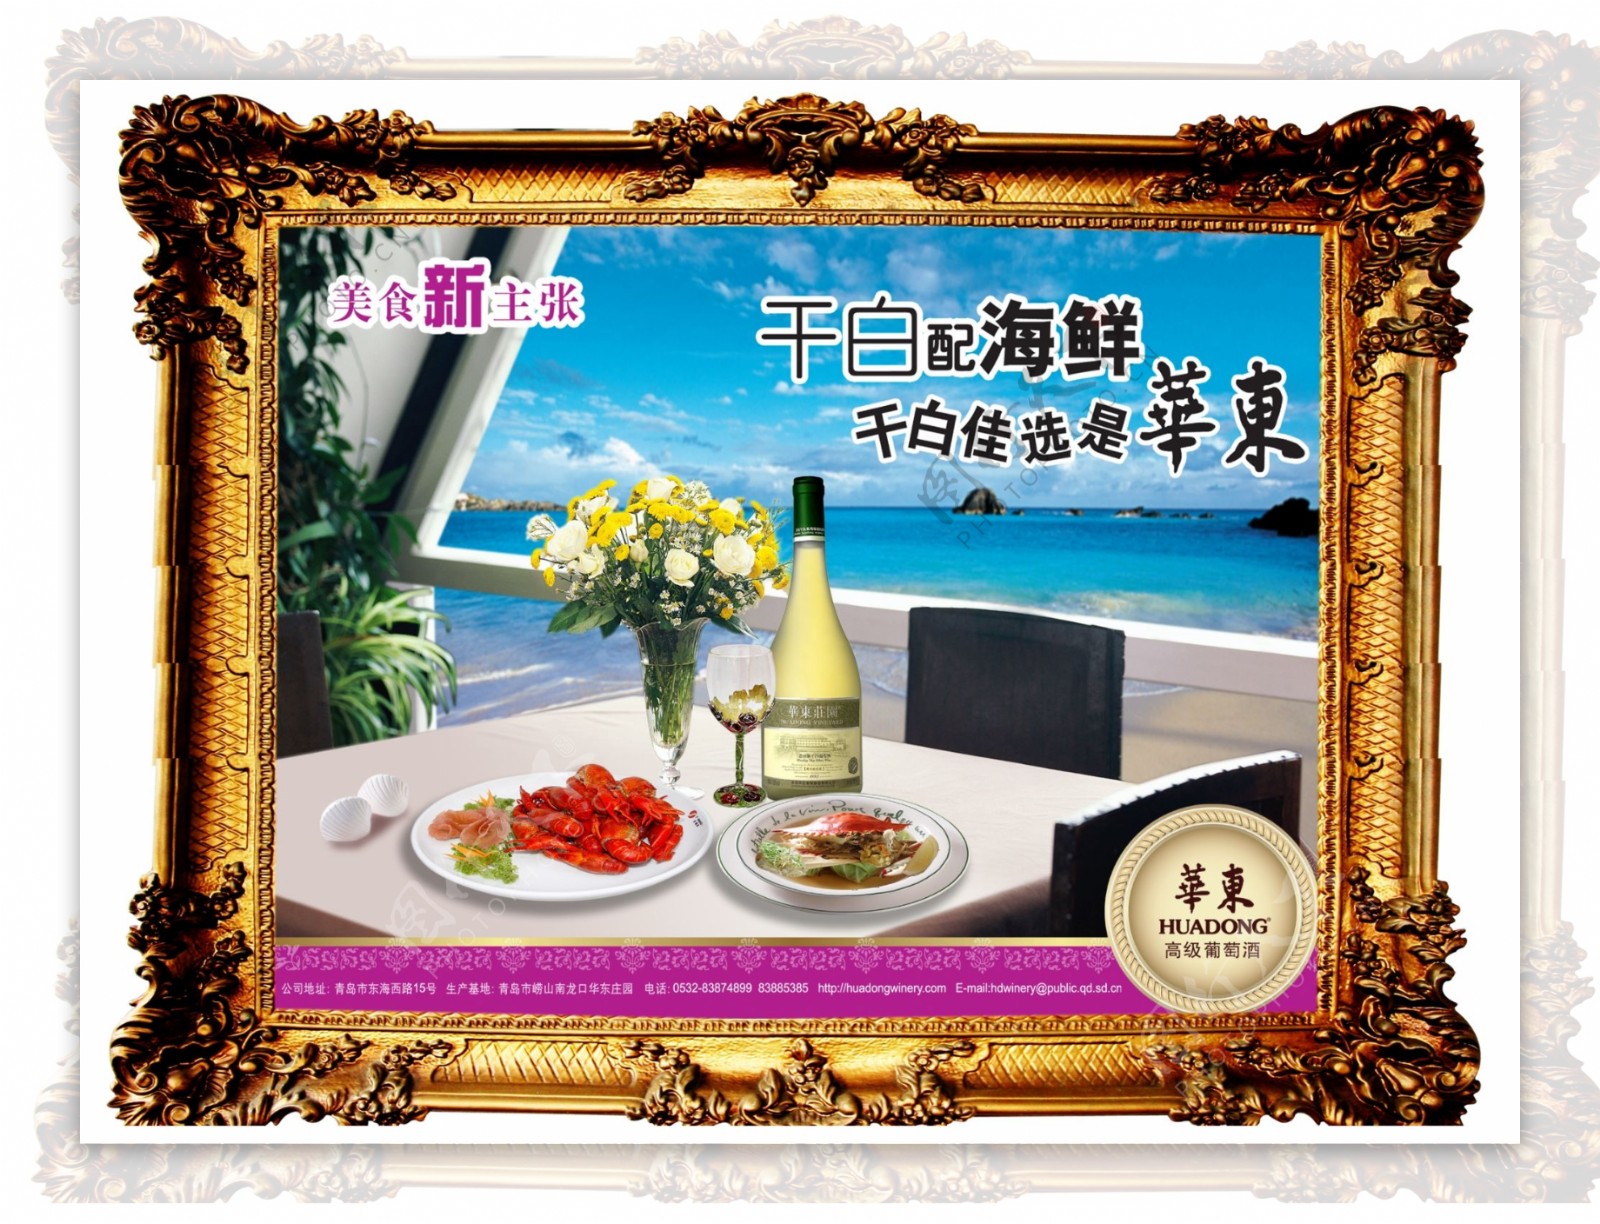 龙腾广告平面广告PSD分层素材源文件酒干白海鲜华东餐厅餐桌海边相框